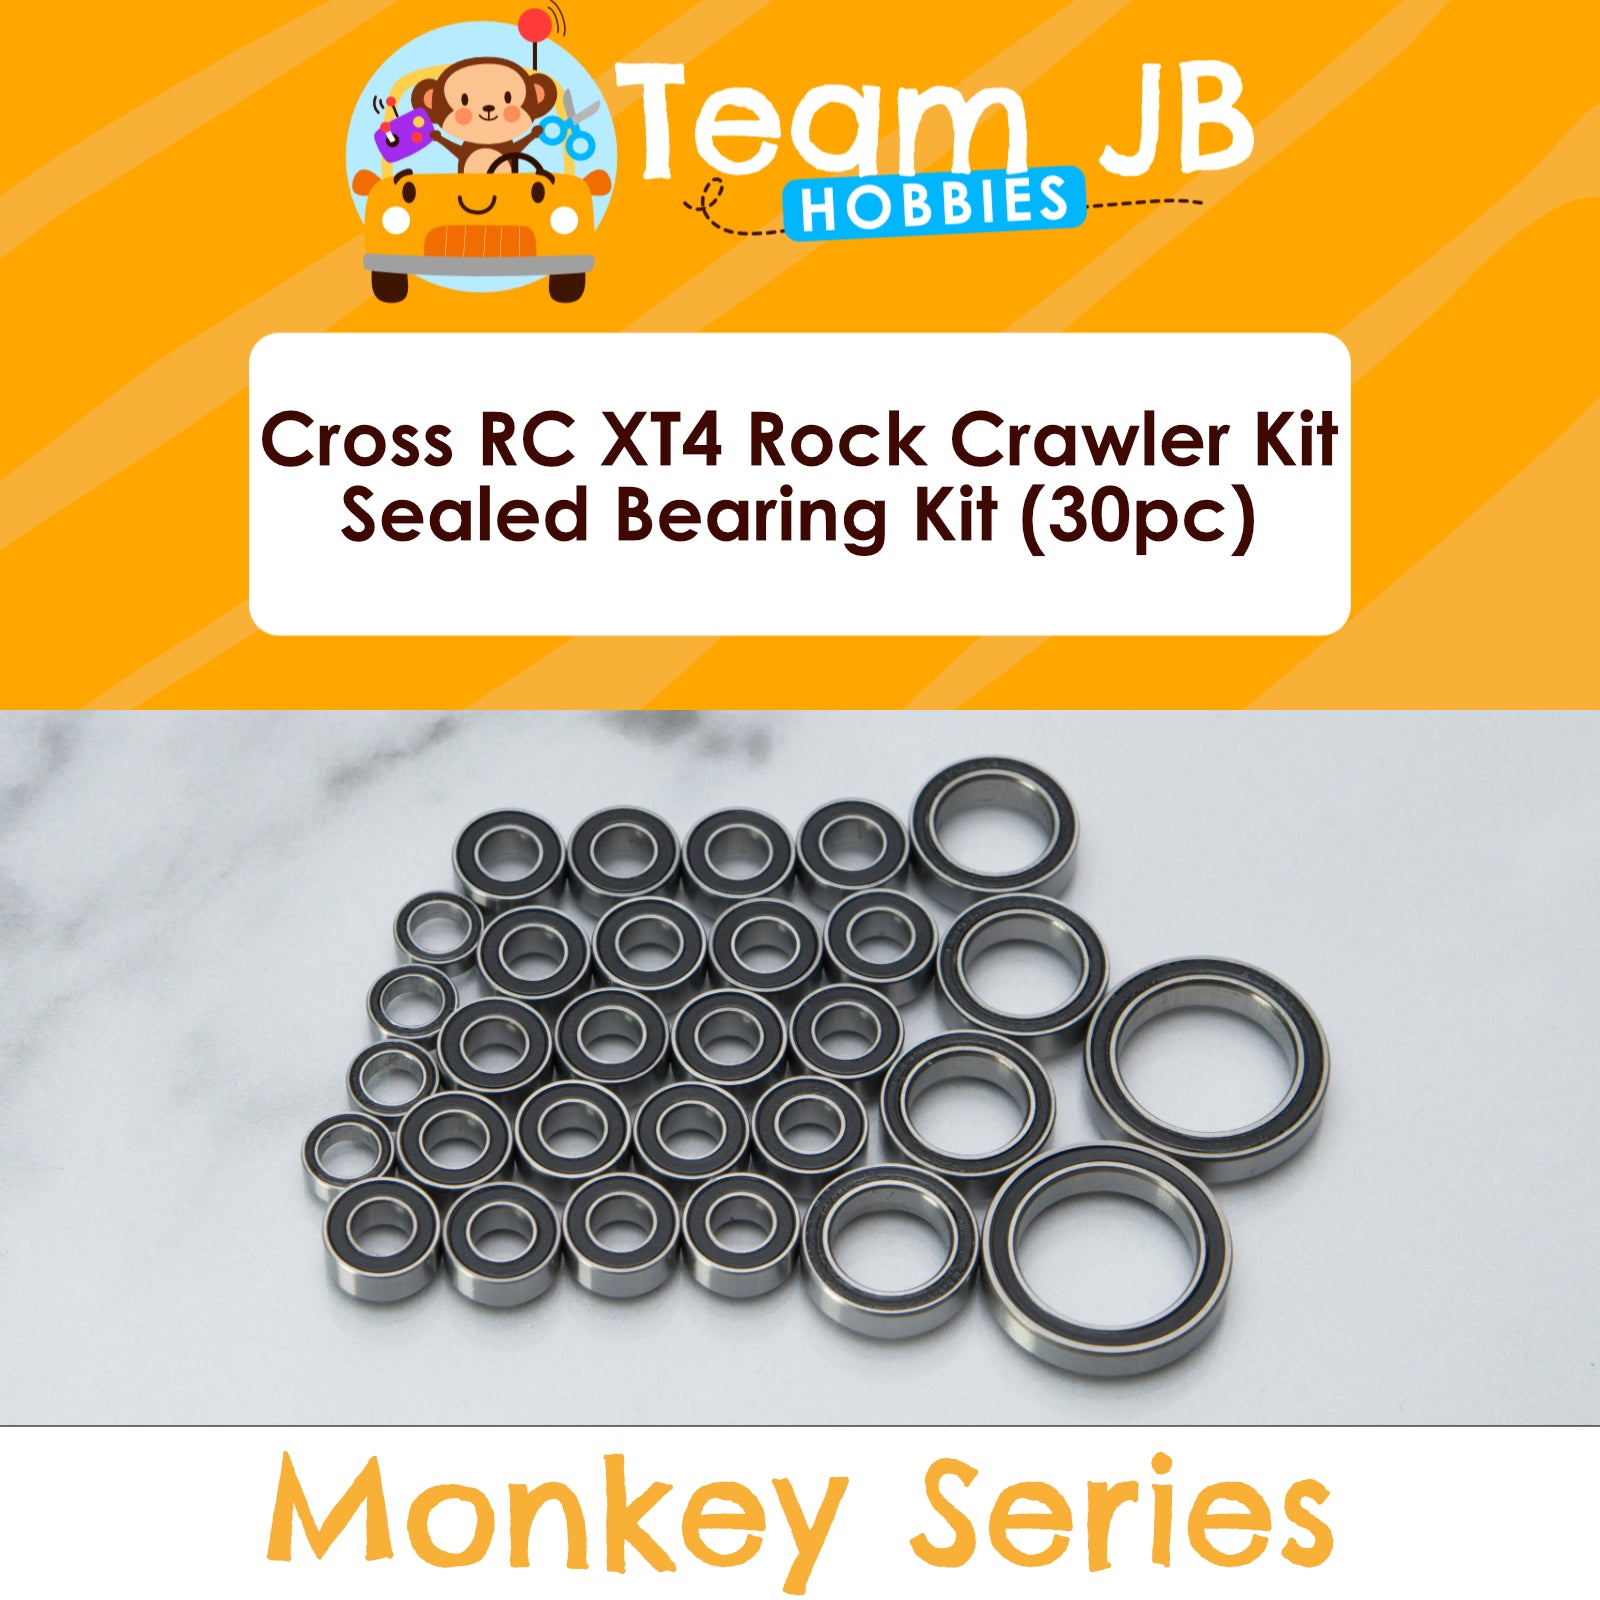 Cross RC XT4 Rock Crawler Kit - Sealed Bearing Kit